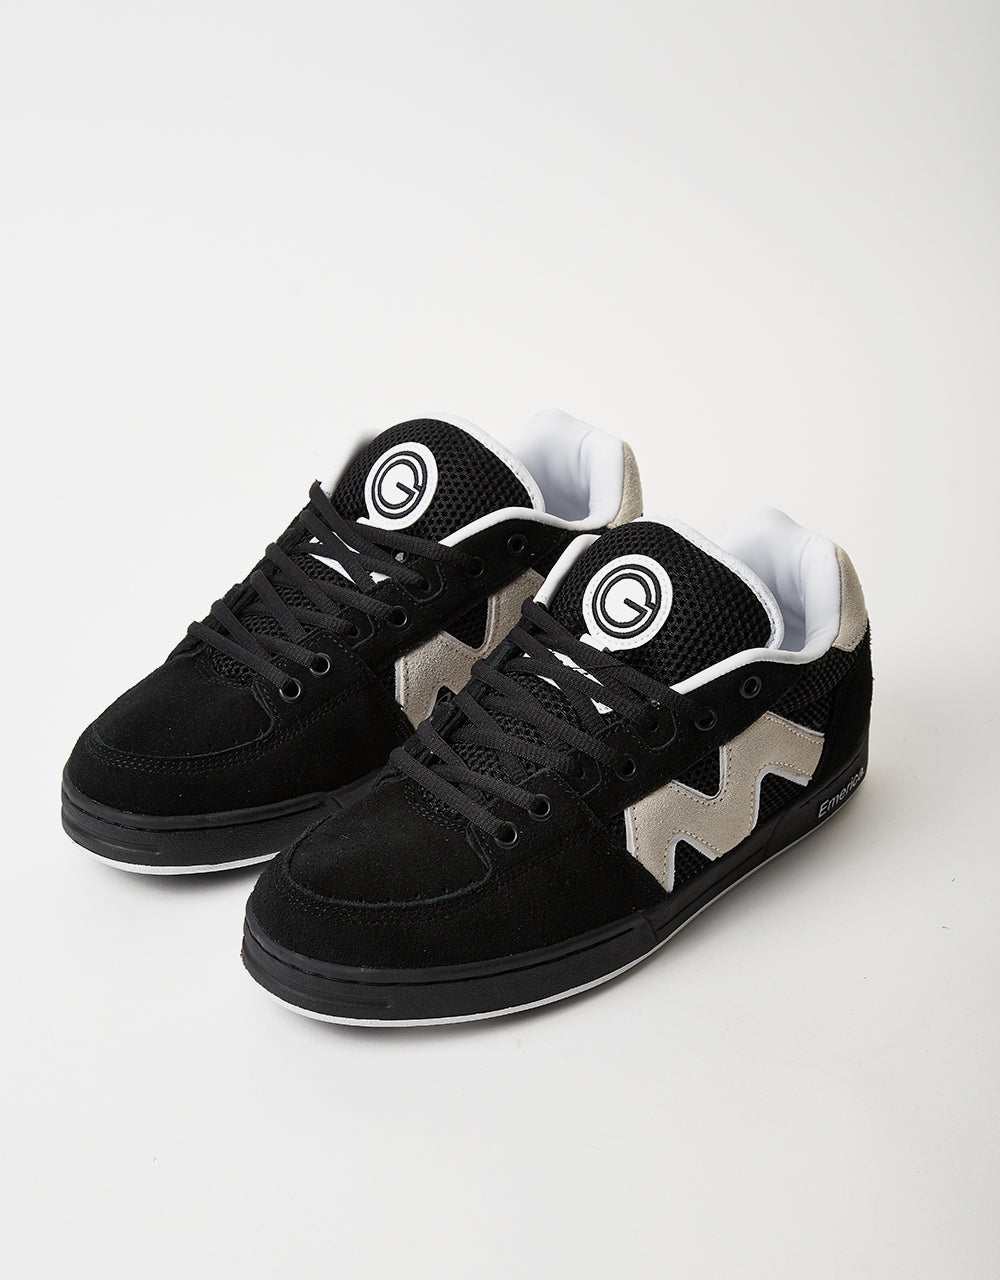 Emerica OG-1 Skate Shoes - Black/White